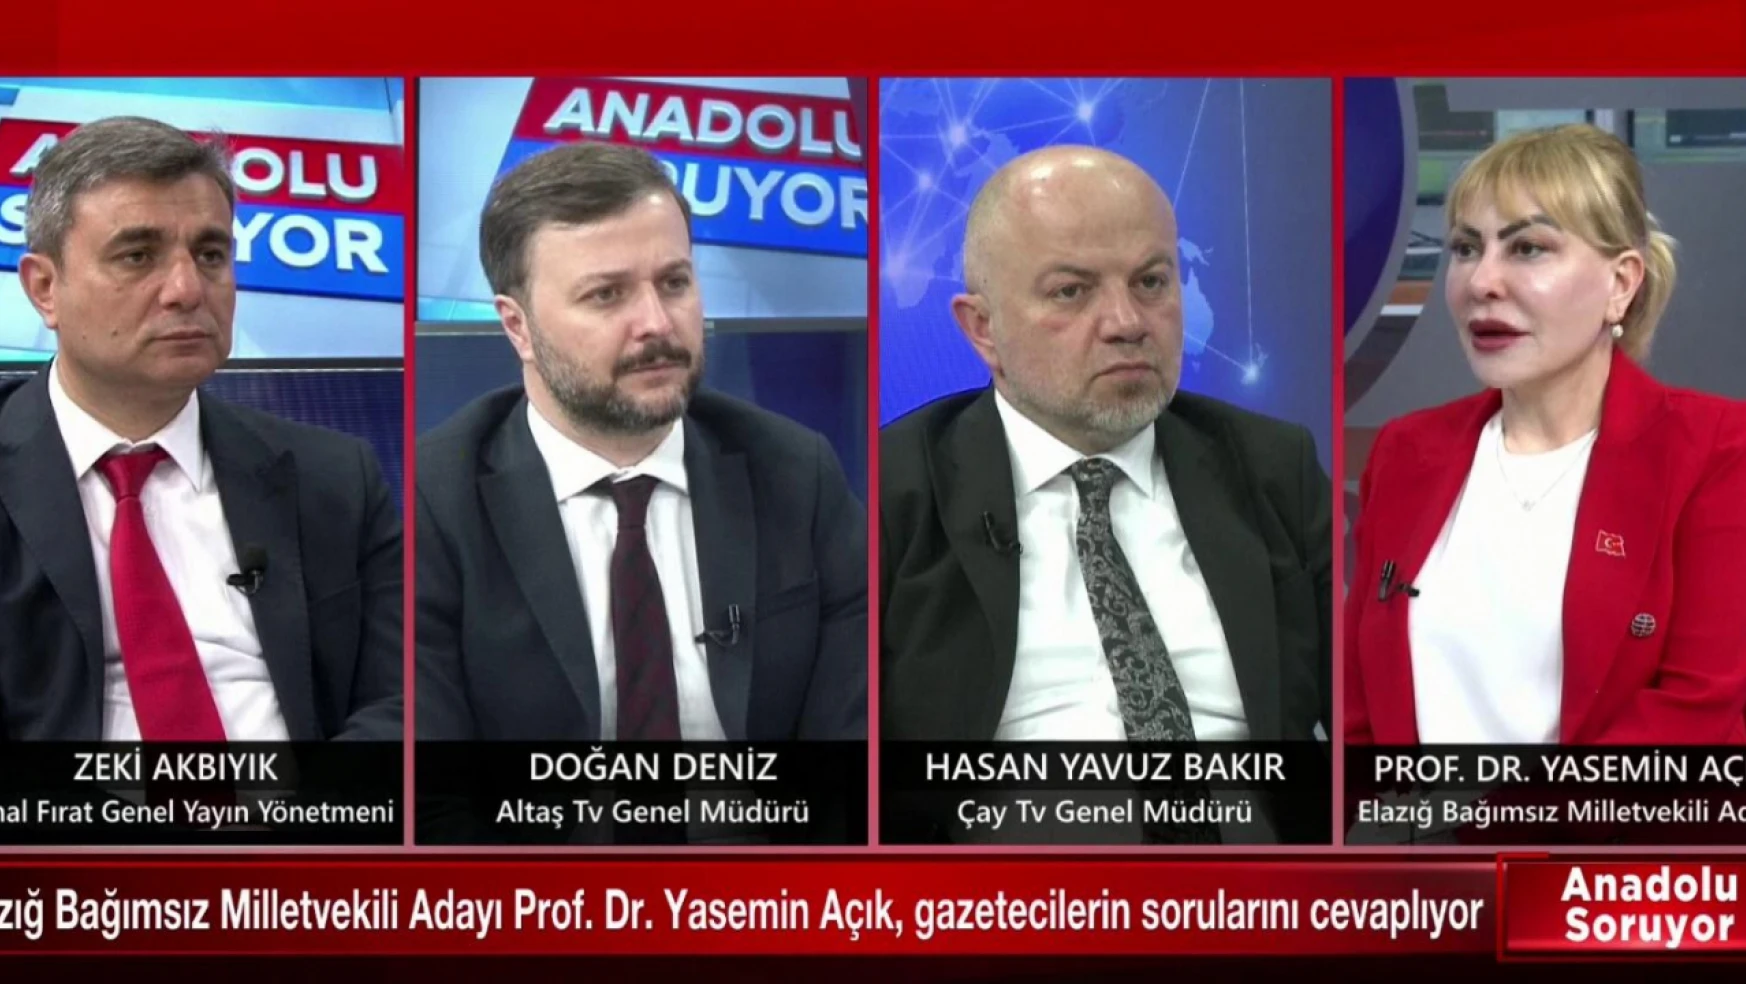 Bağımsız aday prof. Dr. Yasemin Açık, Anadolu  Medyasında Elazığ'ı ve Elazığ'ın sorunlarını anlattı